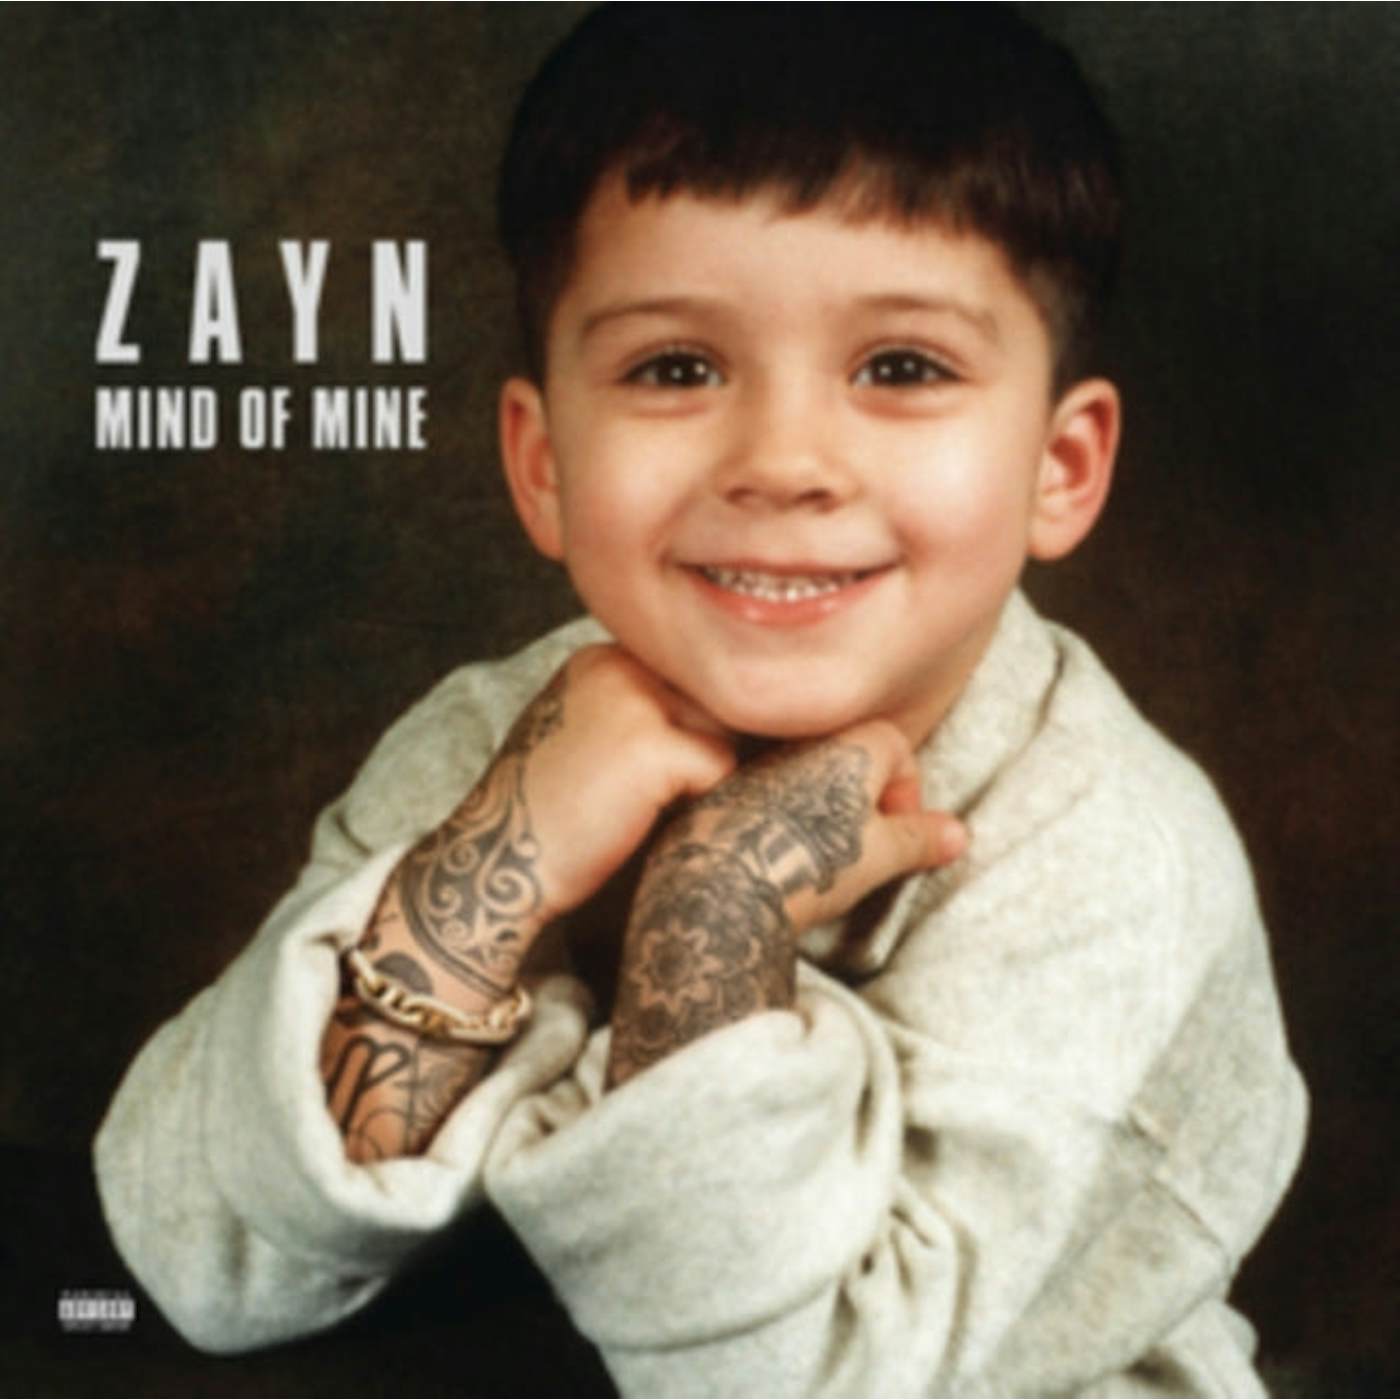 Zayn LP Vinyl Record - Mind Of Mine